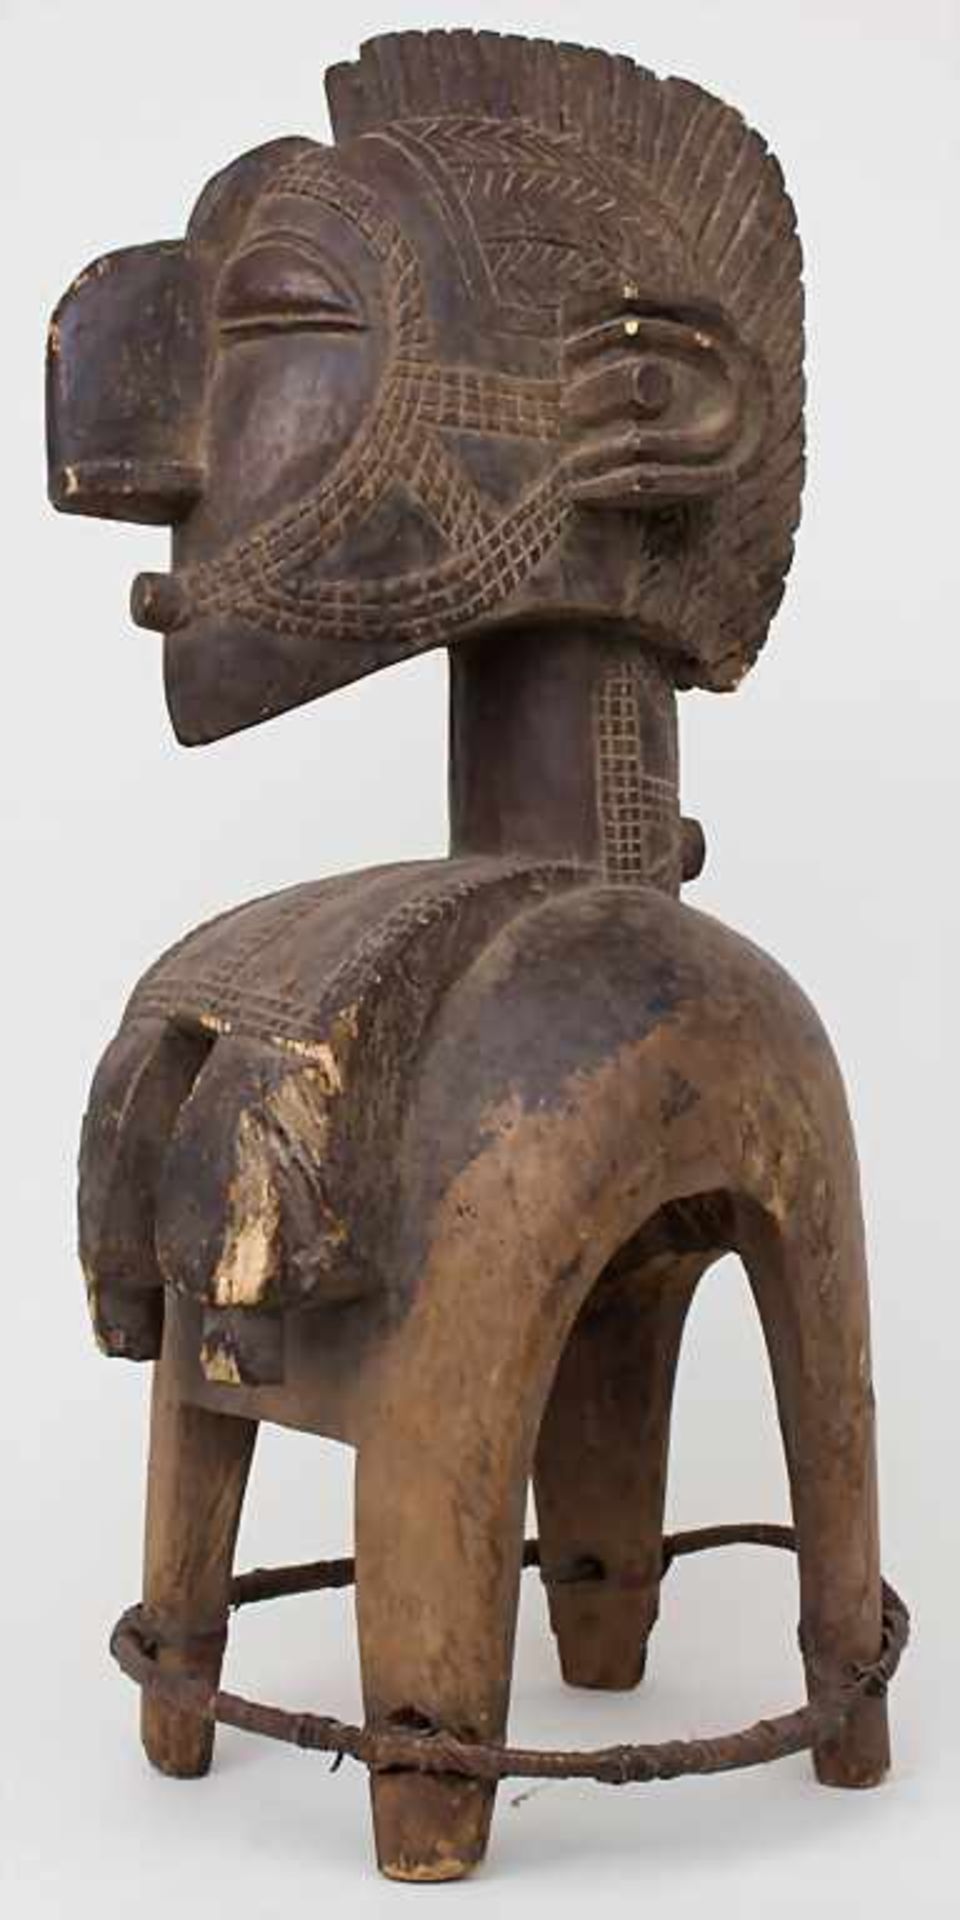 Weibliche Schultermaske / A female shoulder mask, Baga, Guinea BissauMaterial: Holz, Metall, Bast,